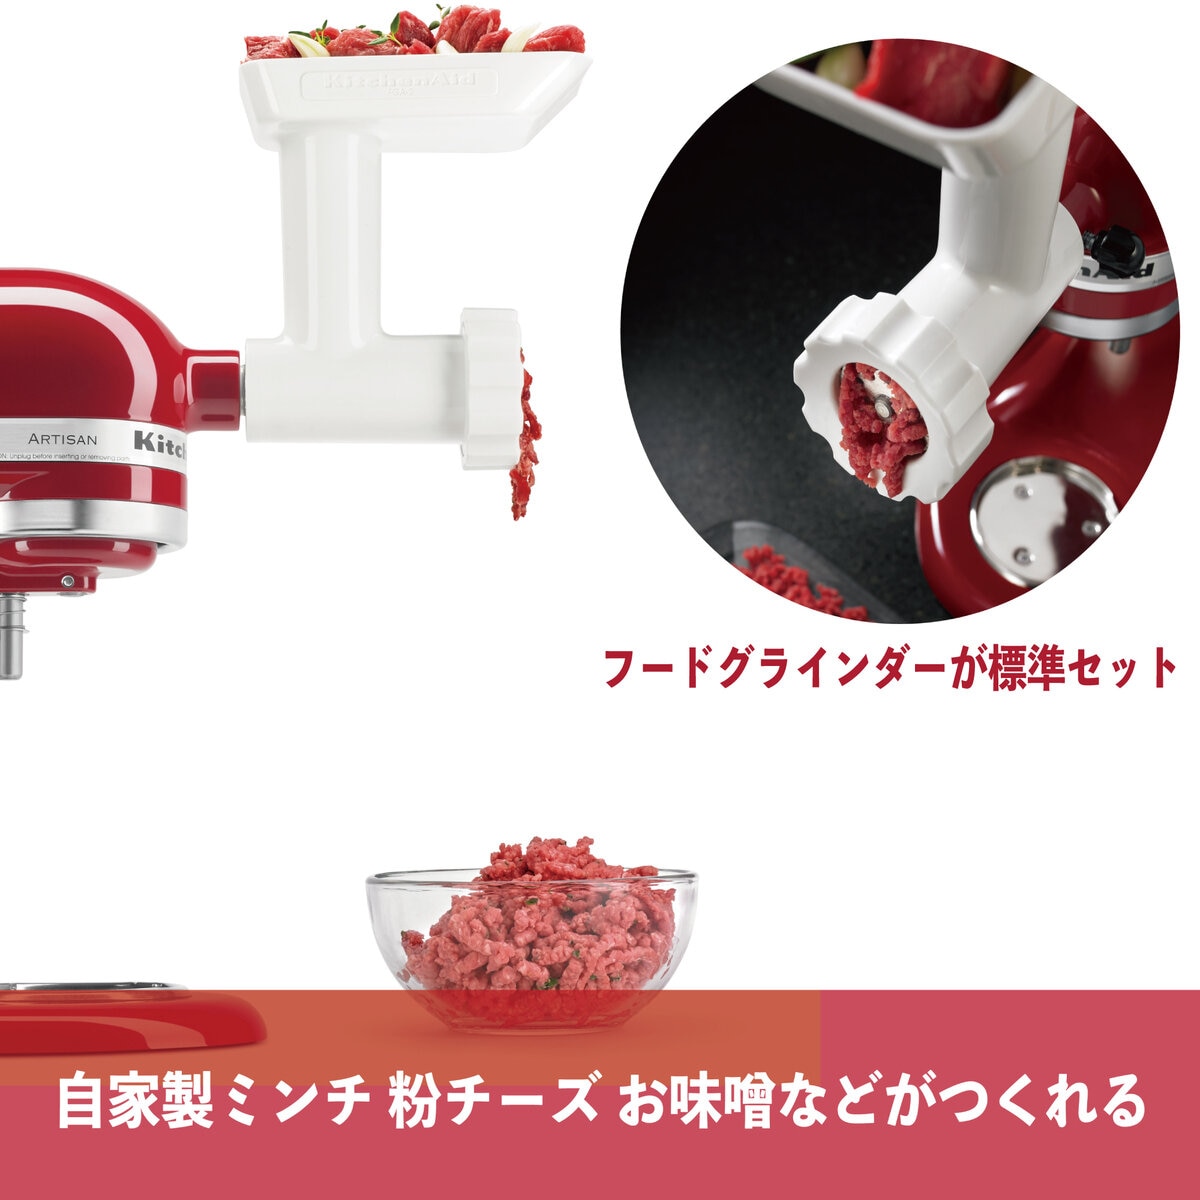 キッチンエイド アルチザン スタンドミキサー 4.8L | Costco Japan